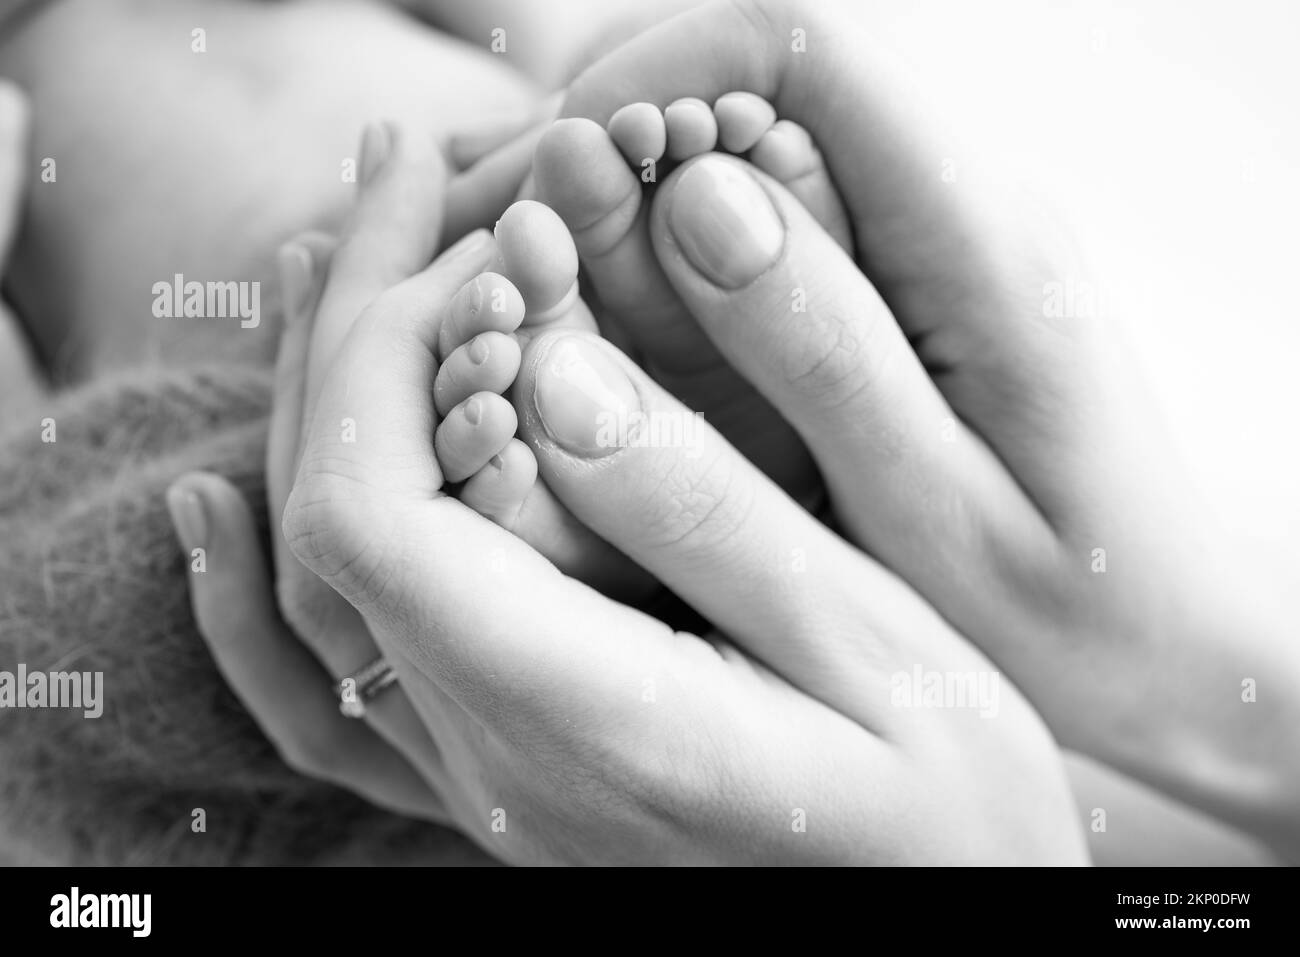 Gambe, dita dei piedi, piedi e talloni di un neonato. La madre tiene delicatamente le gambe del bambino. Foto Stock